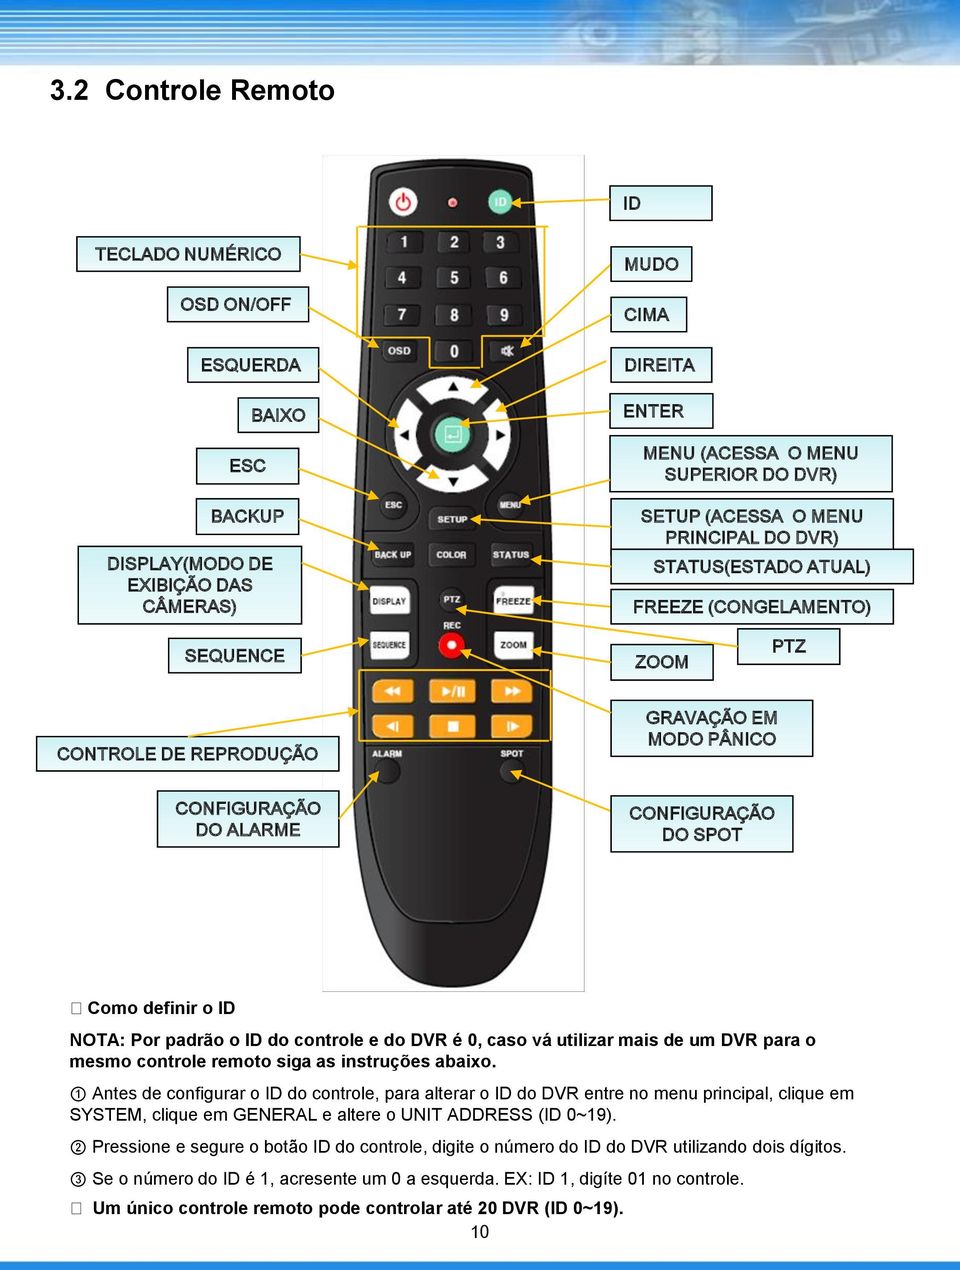 padrão o ID do controle e do DVR é 0, caso vá utilizar mais de um DVR para o mesmo controle remoto siga as instruções abaixo.